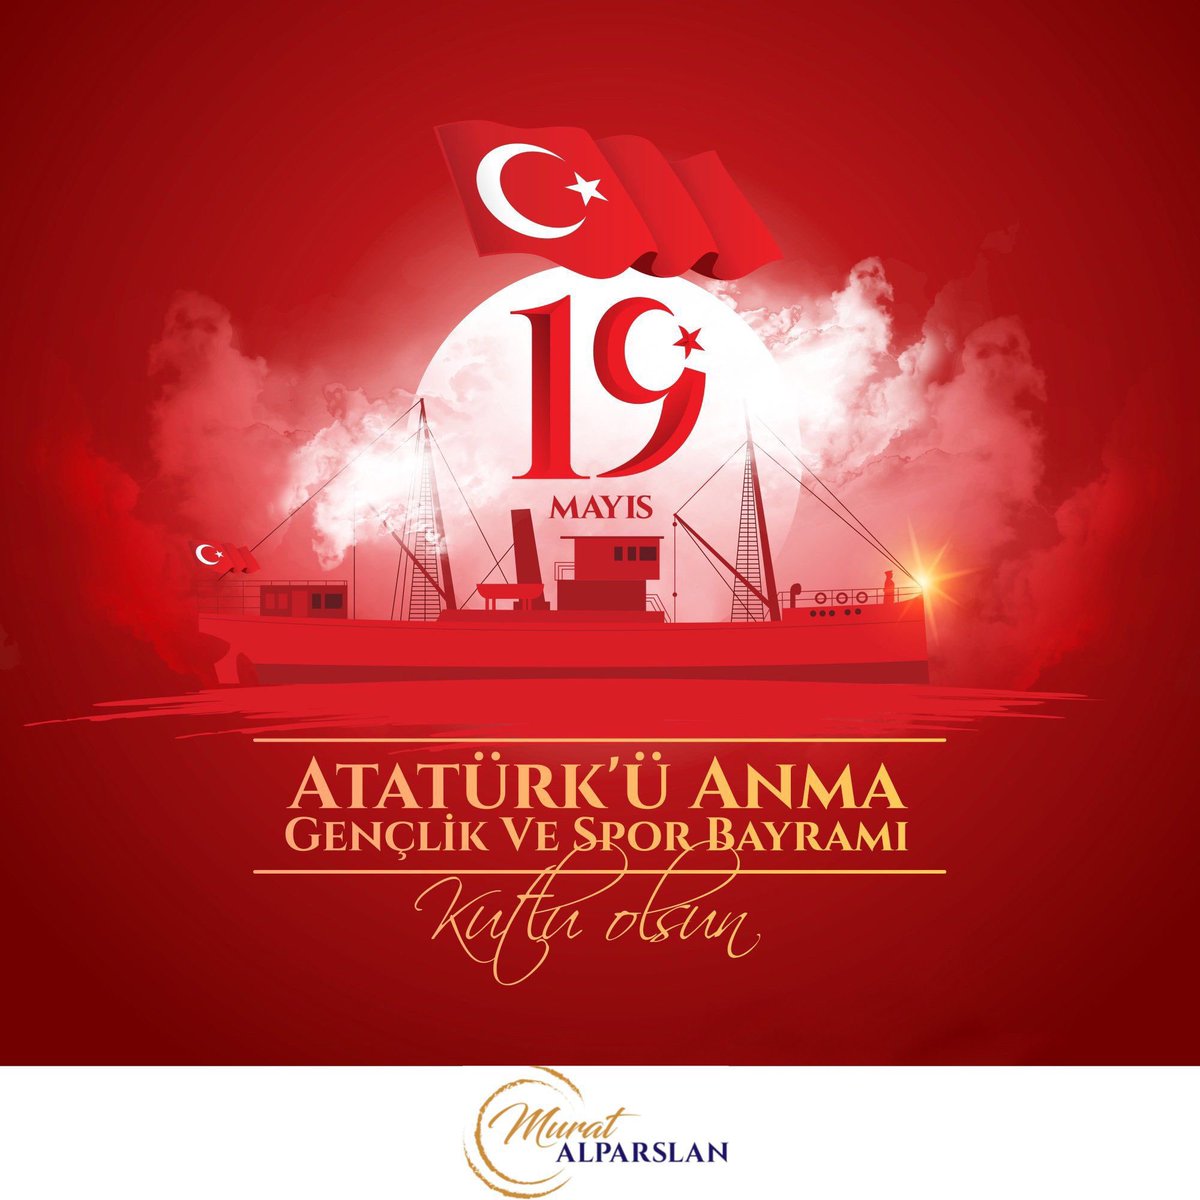 Milli mücadelenin dönüm noktası olan 19 Mayıs Atatürk'ü Anma, Gençlik ve Spor Bayramını tebrik ediyor, Gazi Mustafa Kemal Atatürk ve Kurtuluş Savaşımızın tüm şehit ve gazi kahramanlarını rahmet ve minnetle anıyorum. Milli mücadele ruhu her daim dimdik ayaktadır. #19Mayis1919